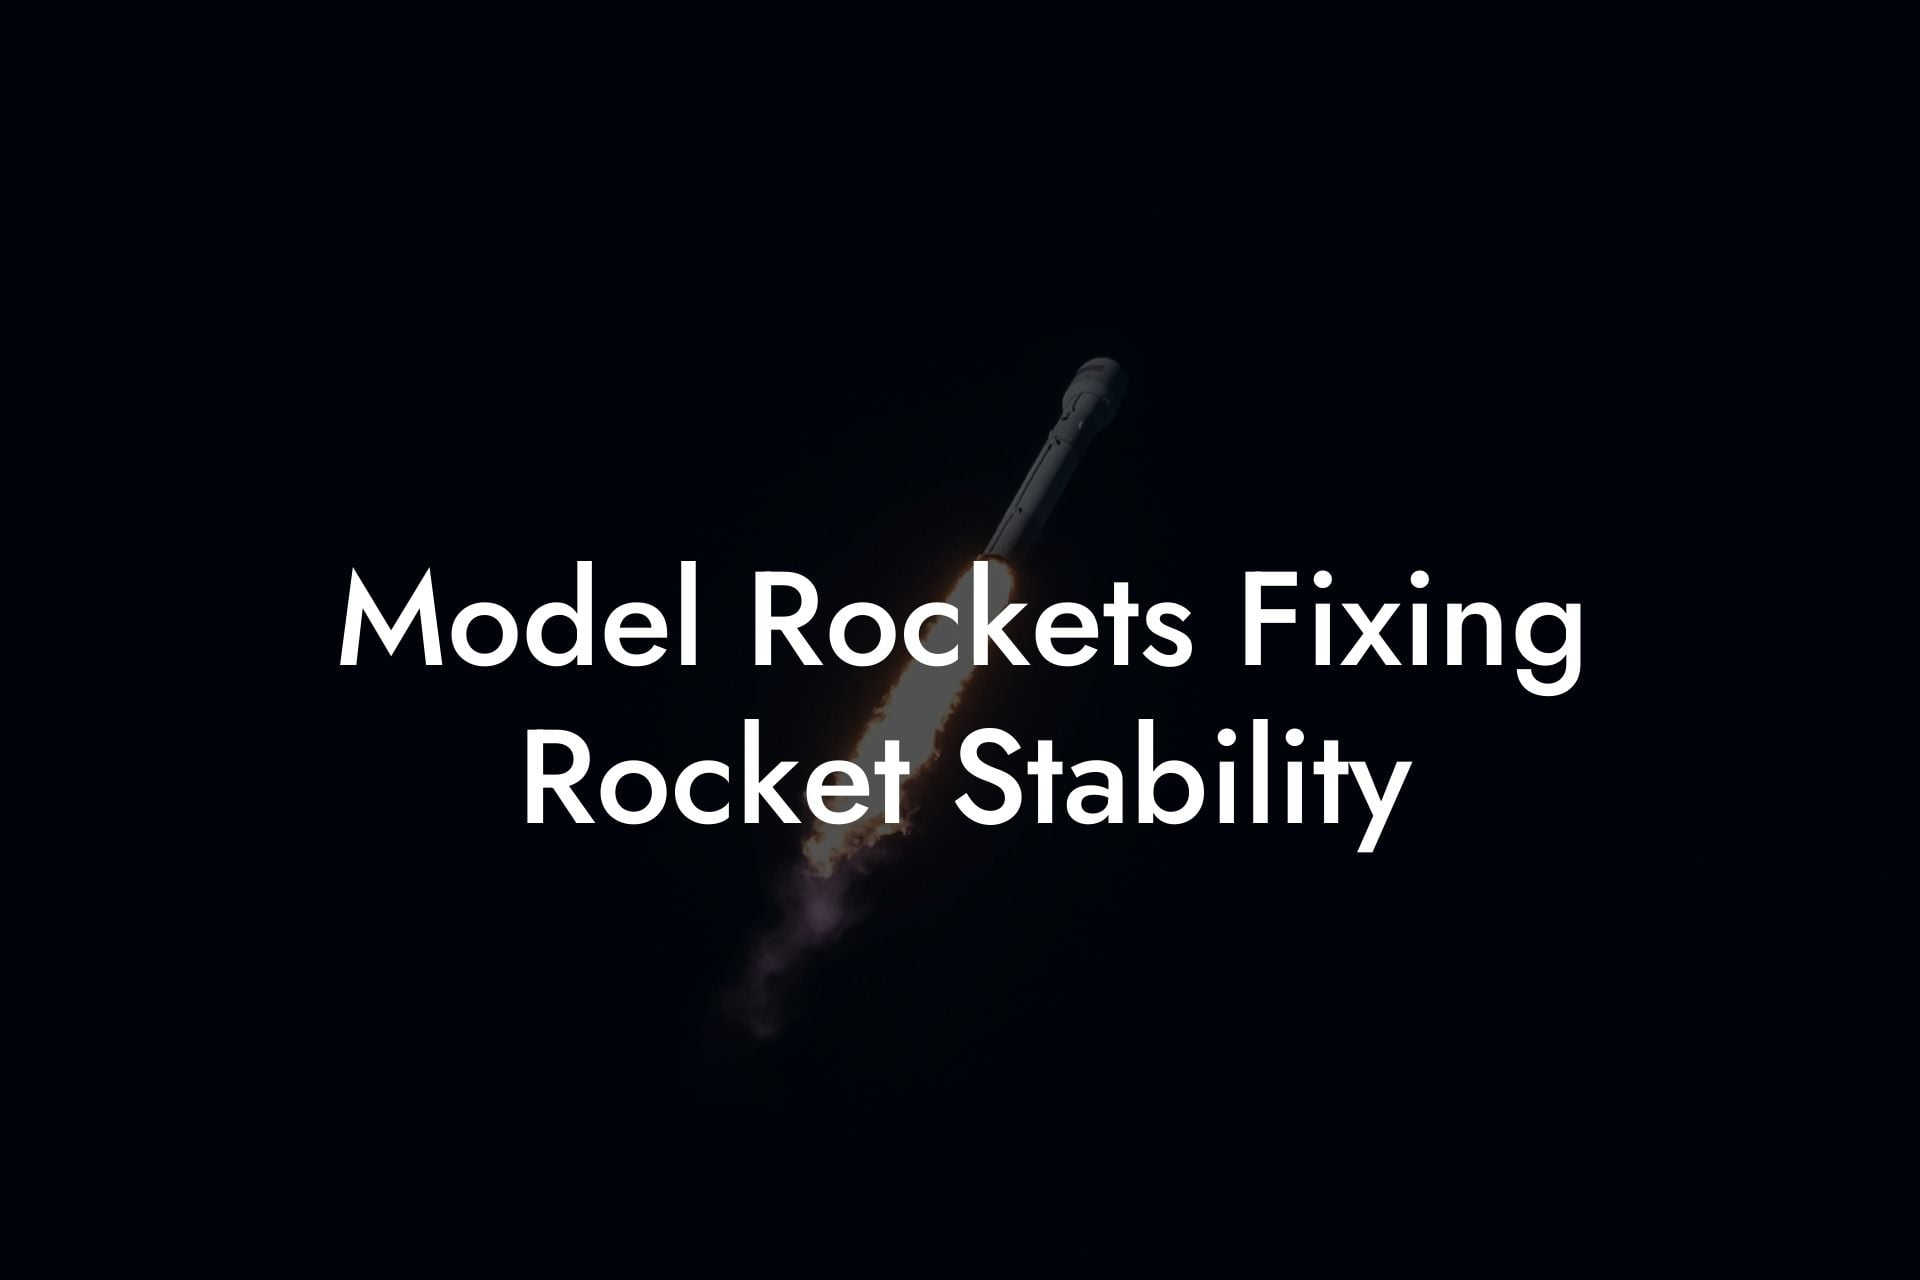 Model Rockets Fixing Rocket Stability